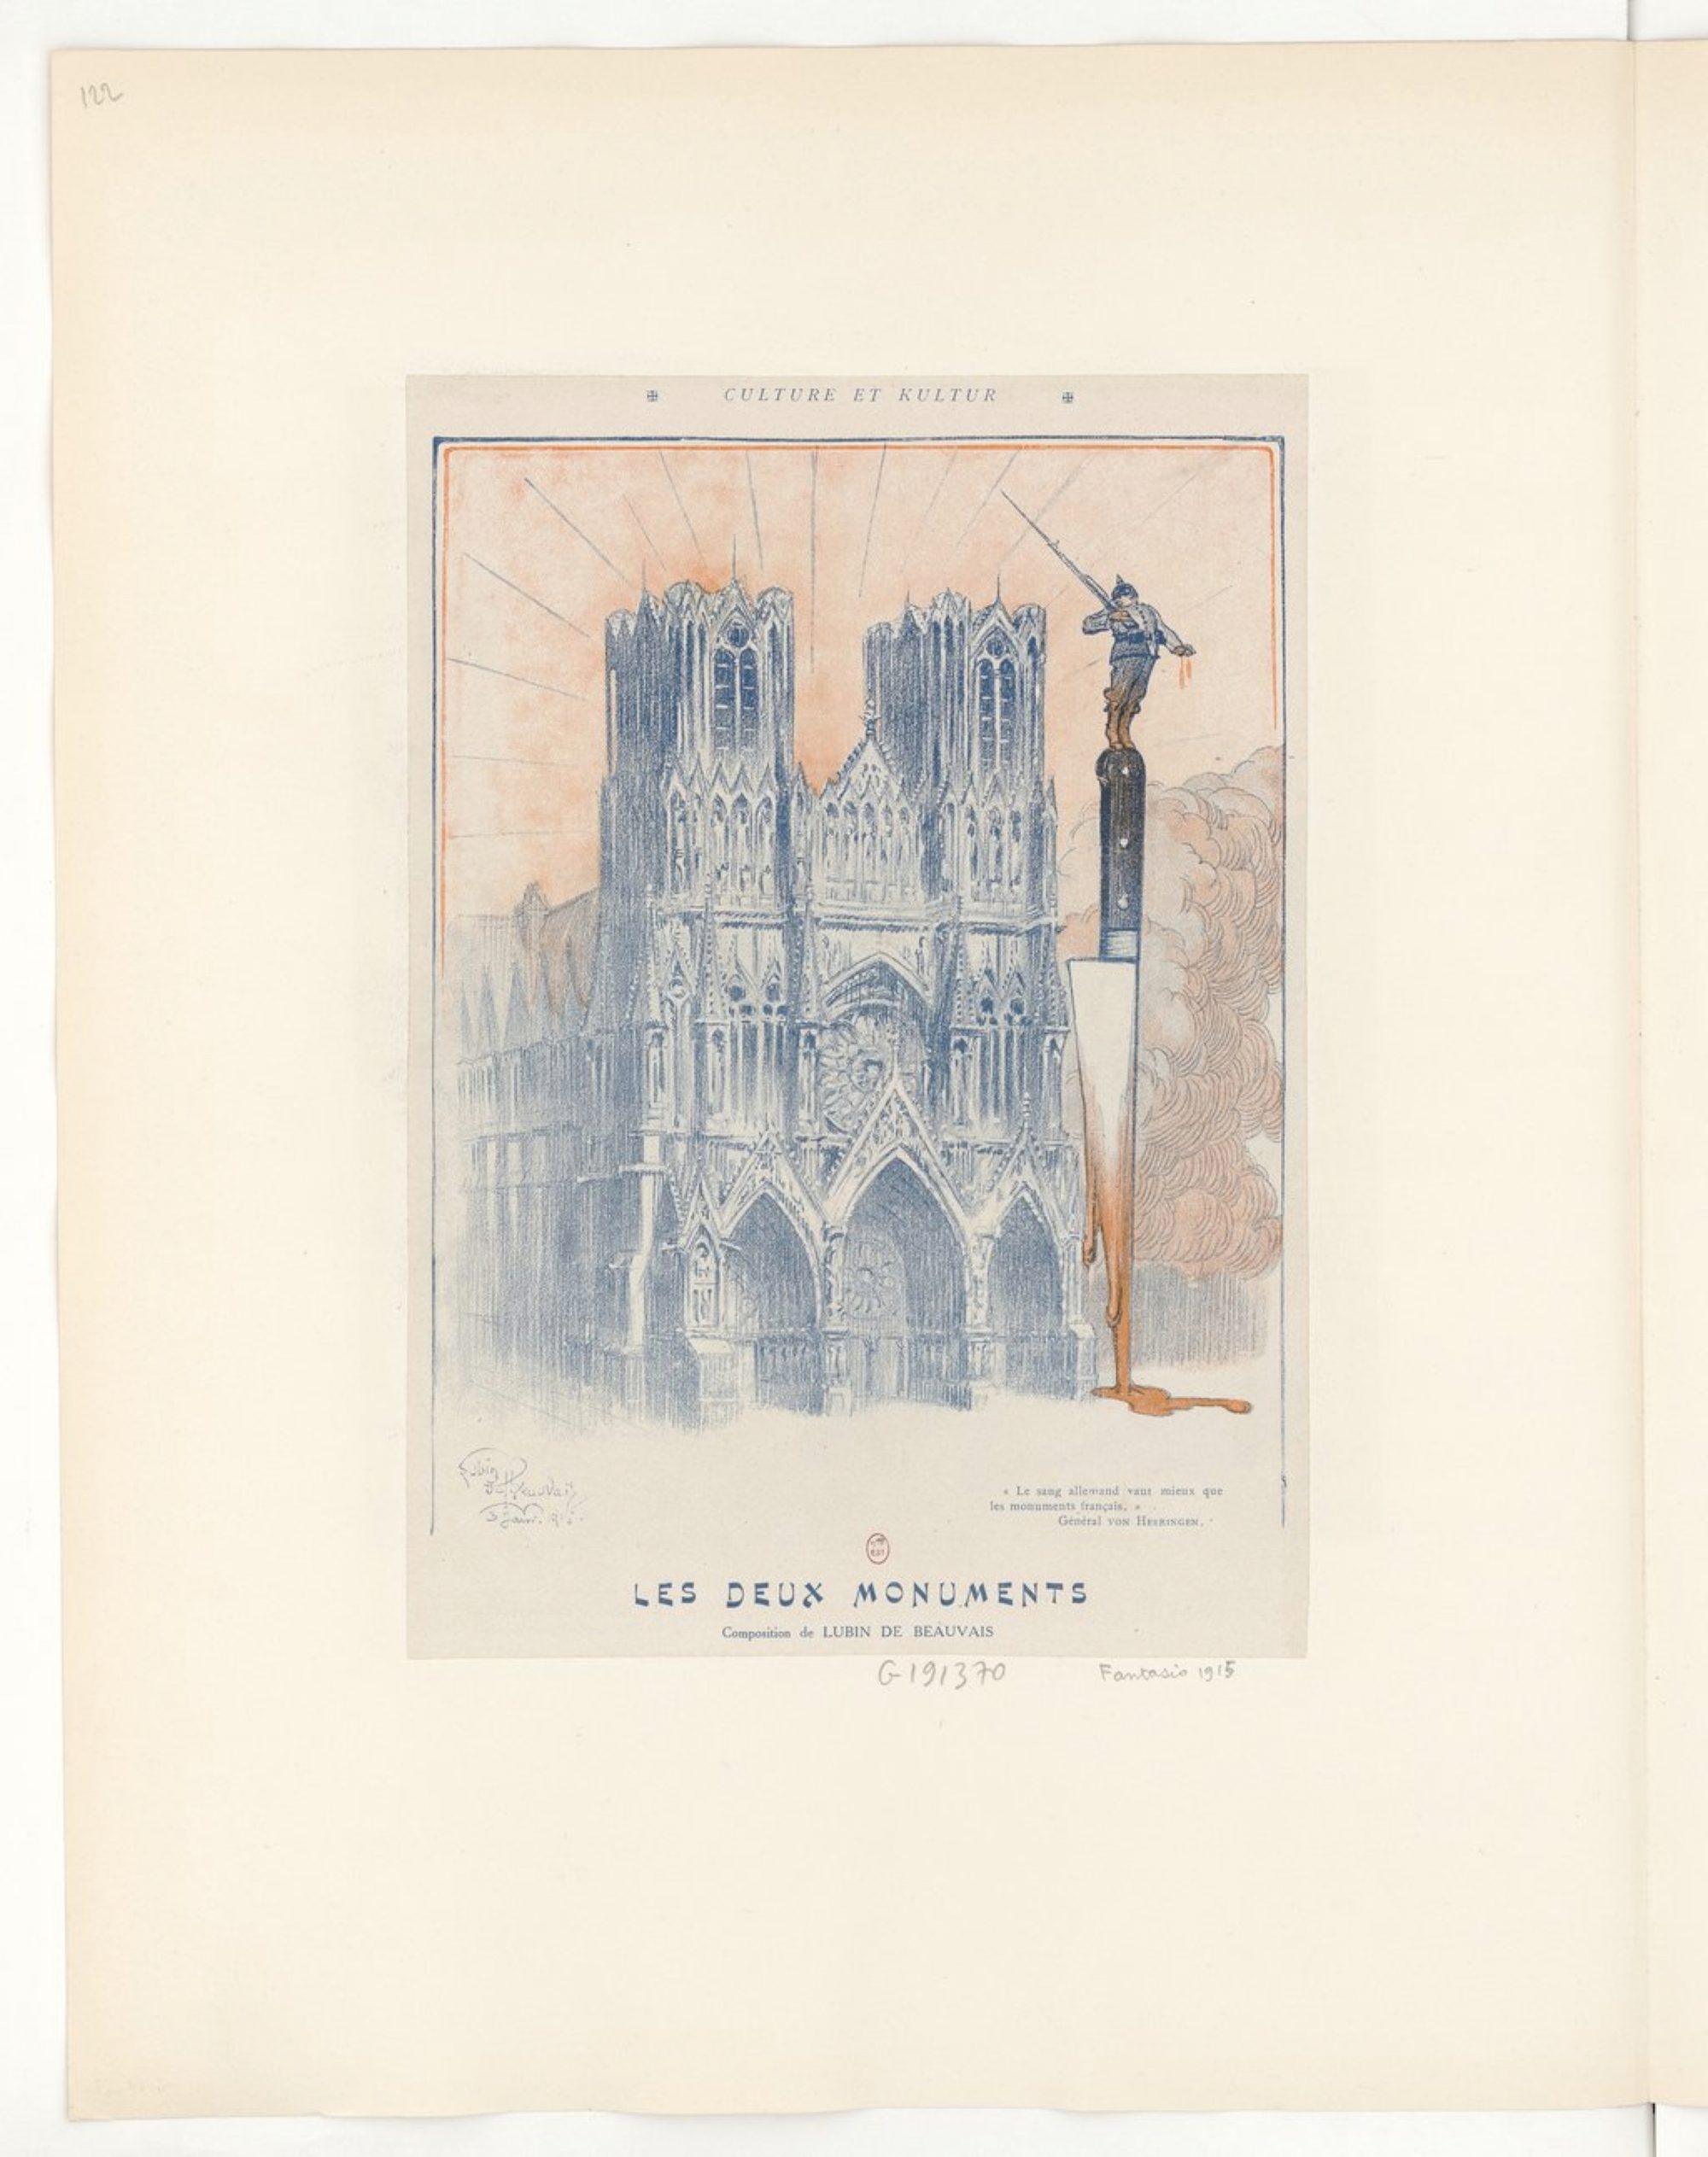 Figure 2b : Lubin de Beauvais, « Culture et Kultur », Fantasio, septembre 1915.